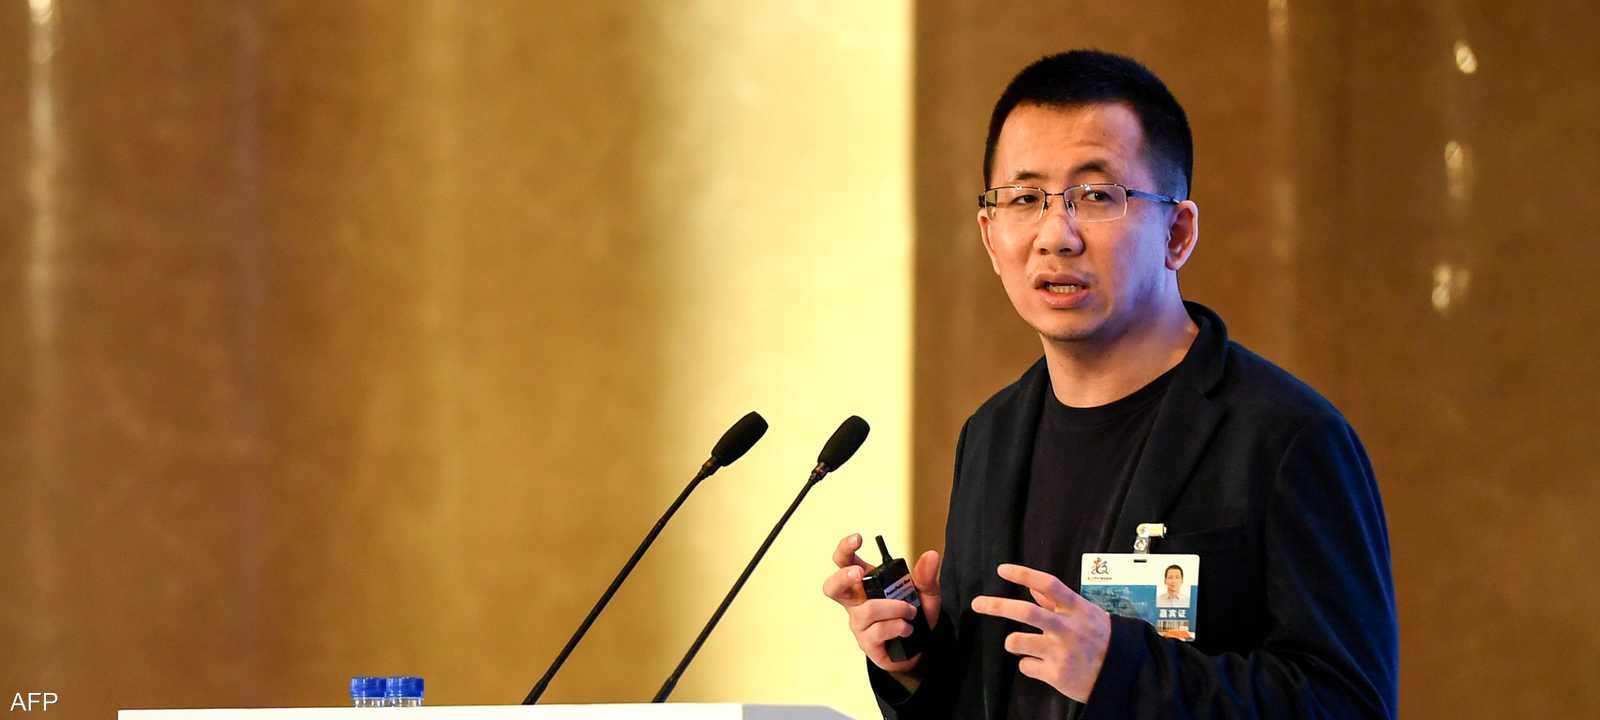 تشانغ يي مين، مؤسس مجموعة "بايت دانس" الصينية